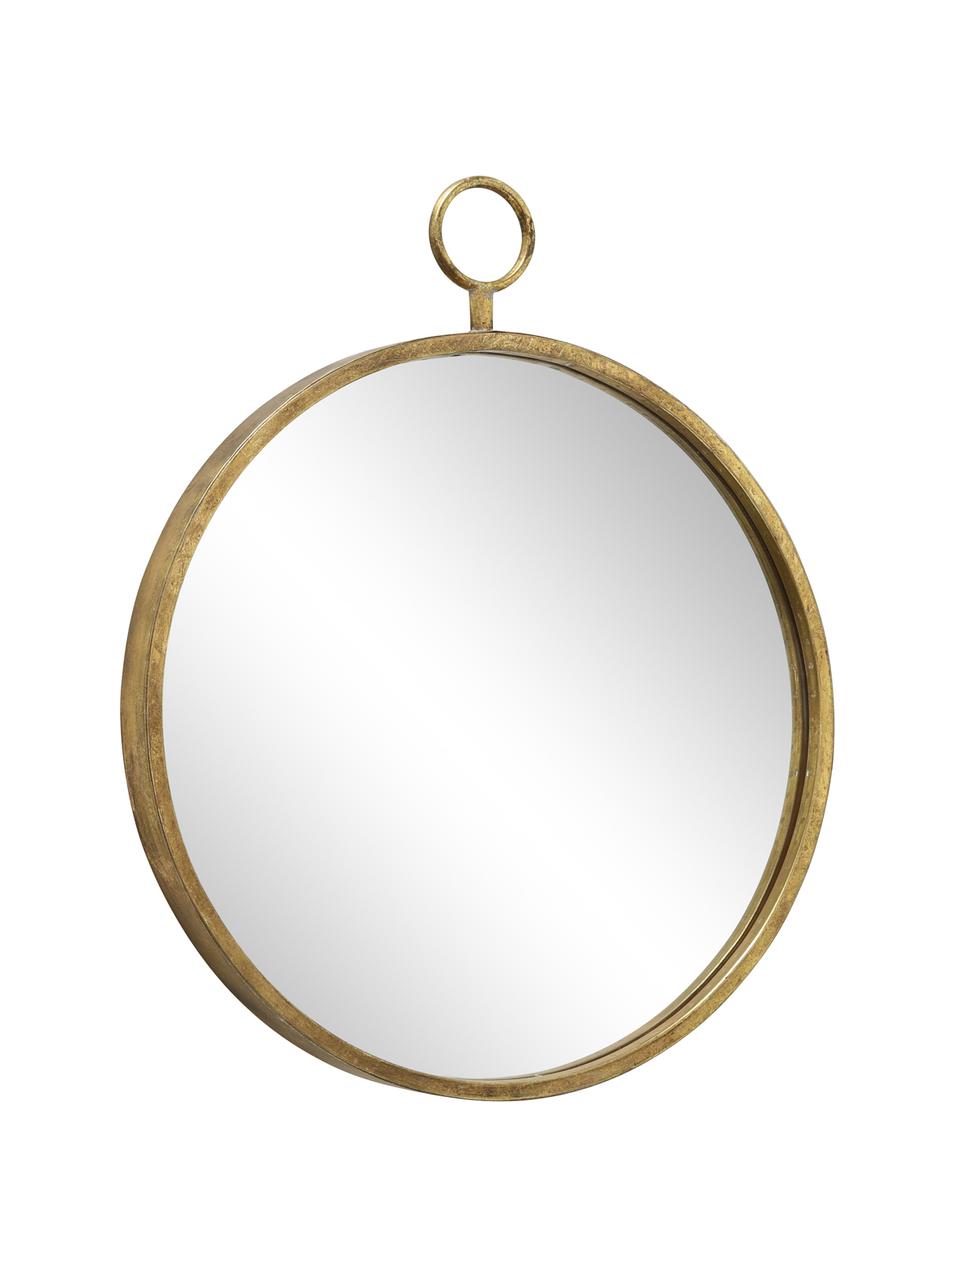 Specchio da parete rotondo con cornice in metallo Prado, Cornice: metallo ottonato, Superficie dello specchio: lastra di vetro, Ottonato, Larg. 55 x Alt. 66 cm